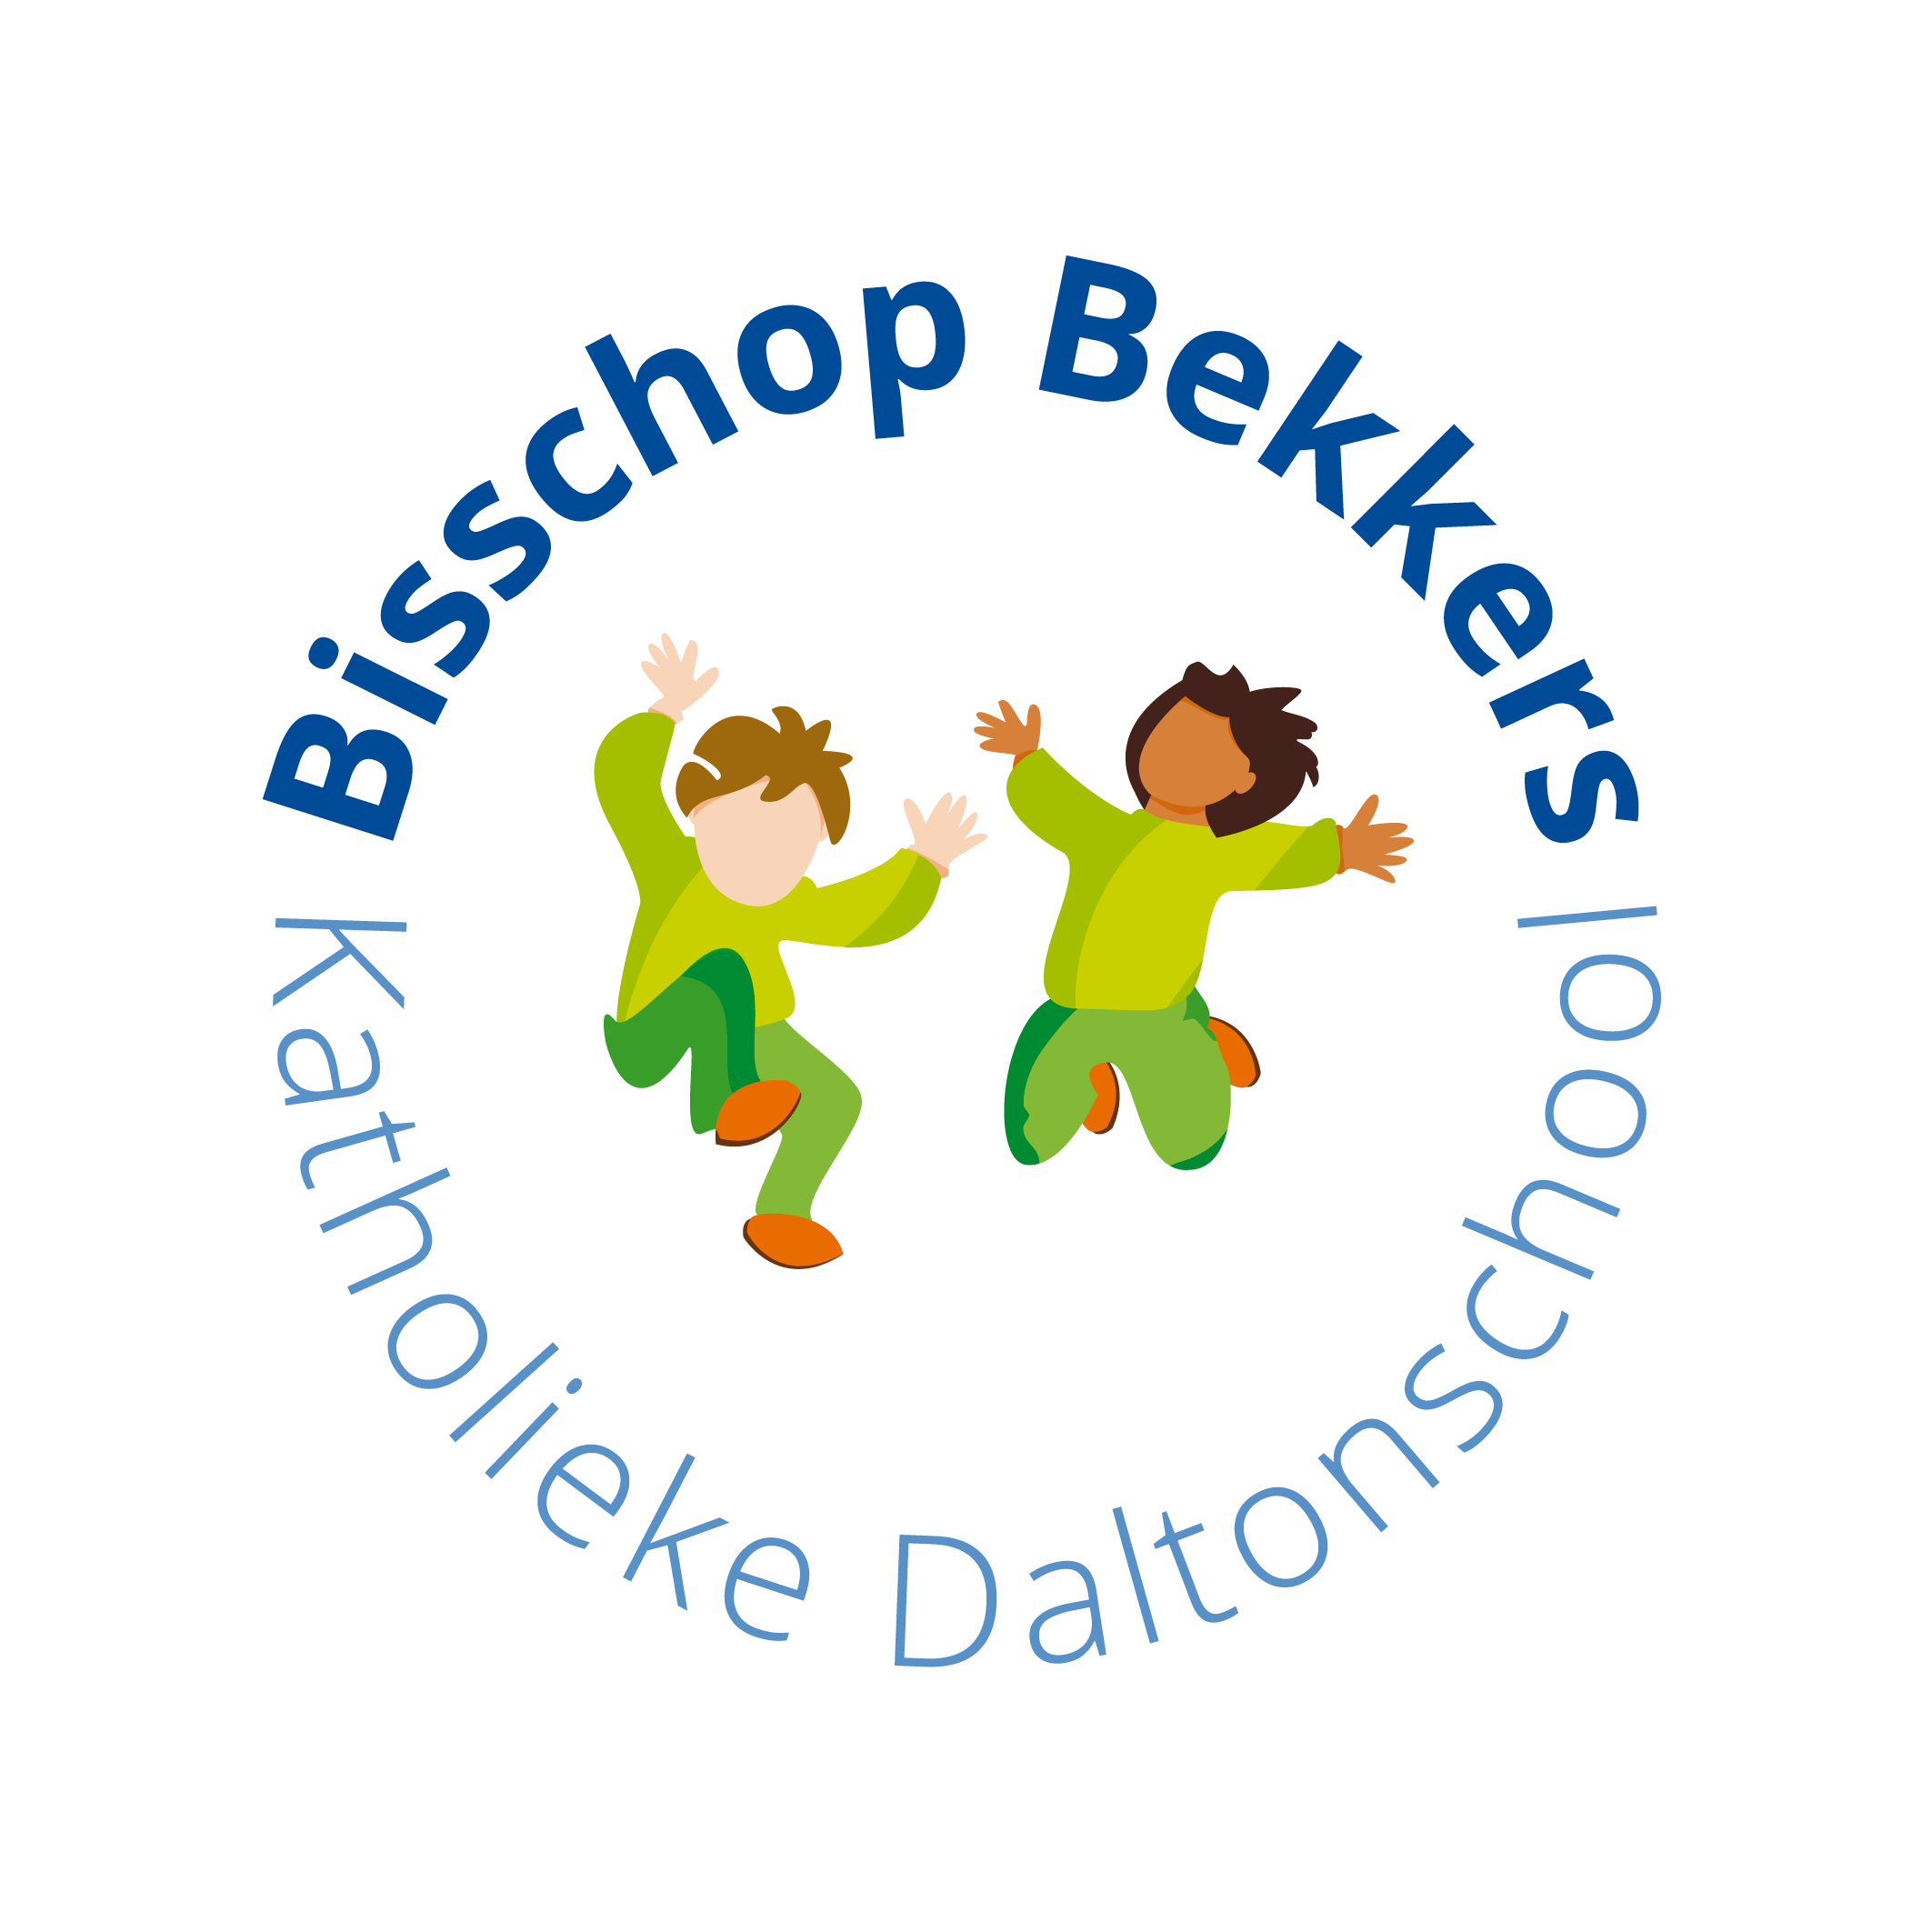 Katholieke Daltonschool Bisschop Bekkers logo